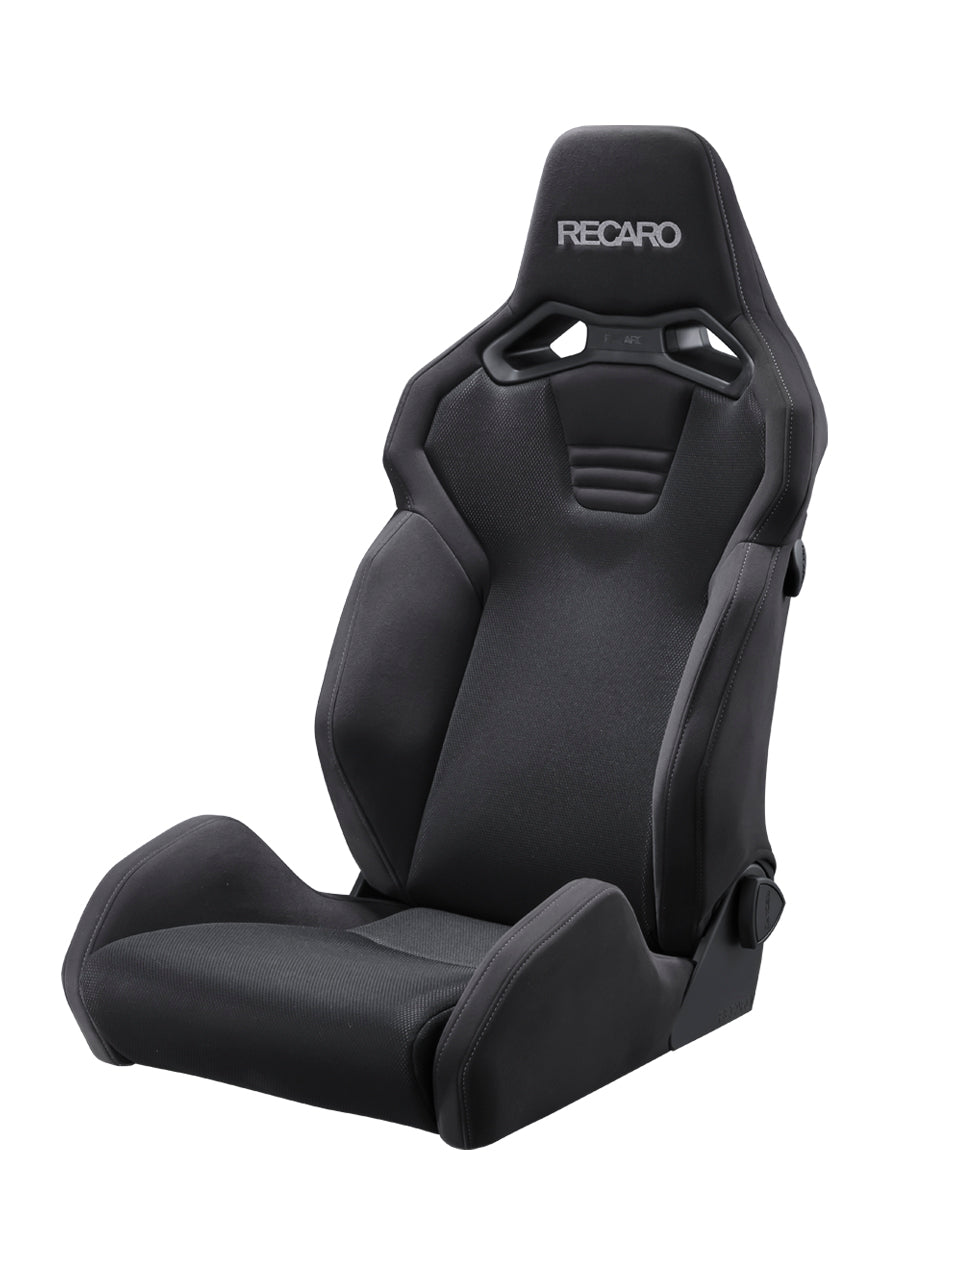 RECARO SR S BK100 BK BK BRILLIANT MESH BLACK AND BLACK COLOR SEAT 81-120.20.640-0